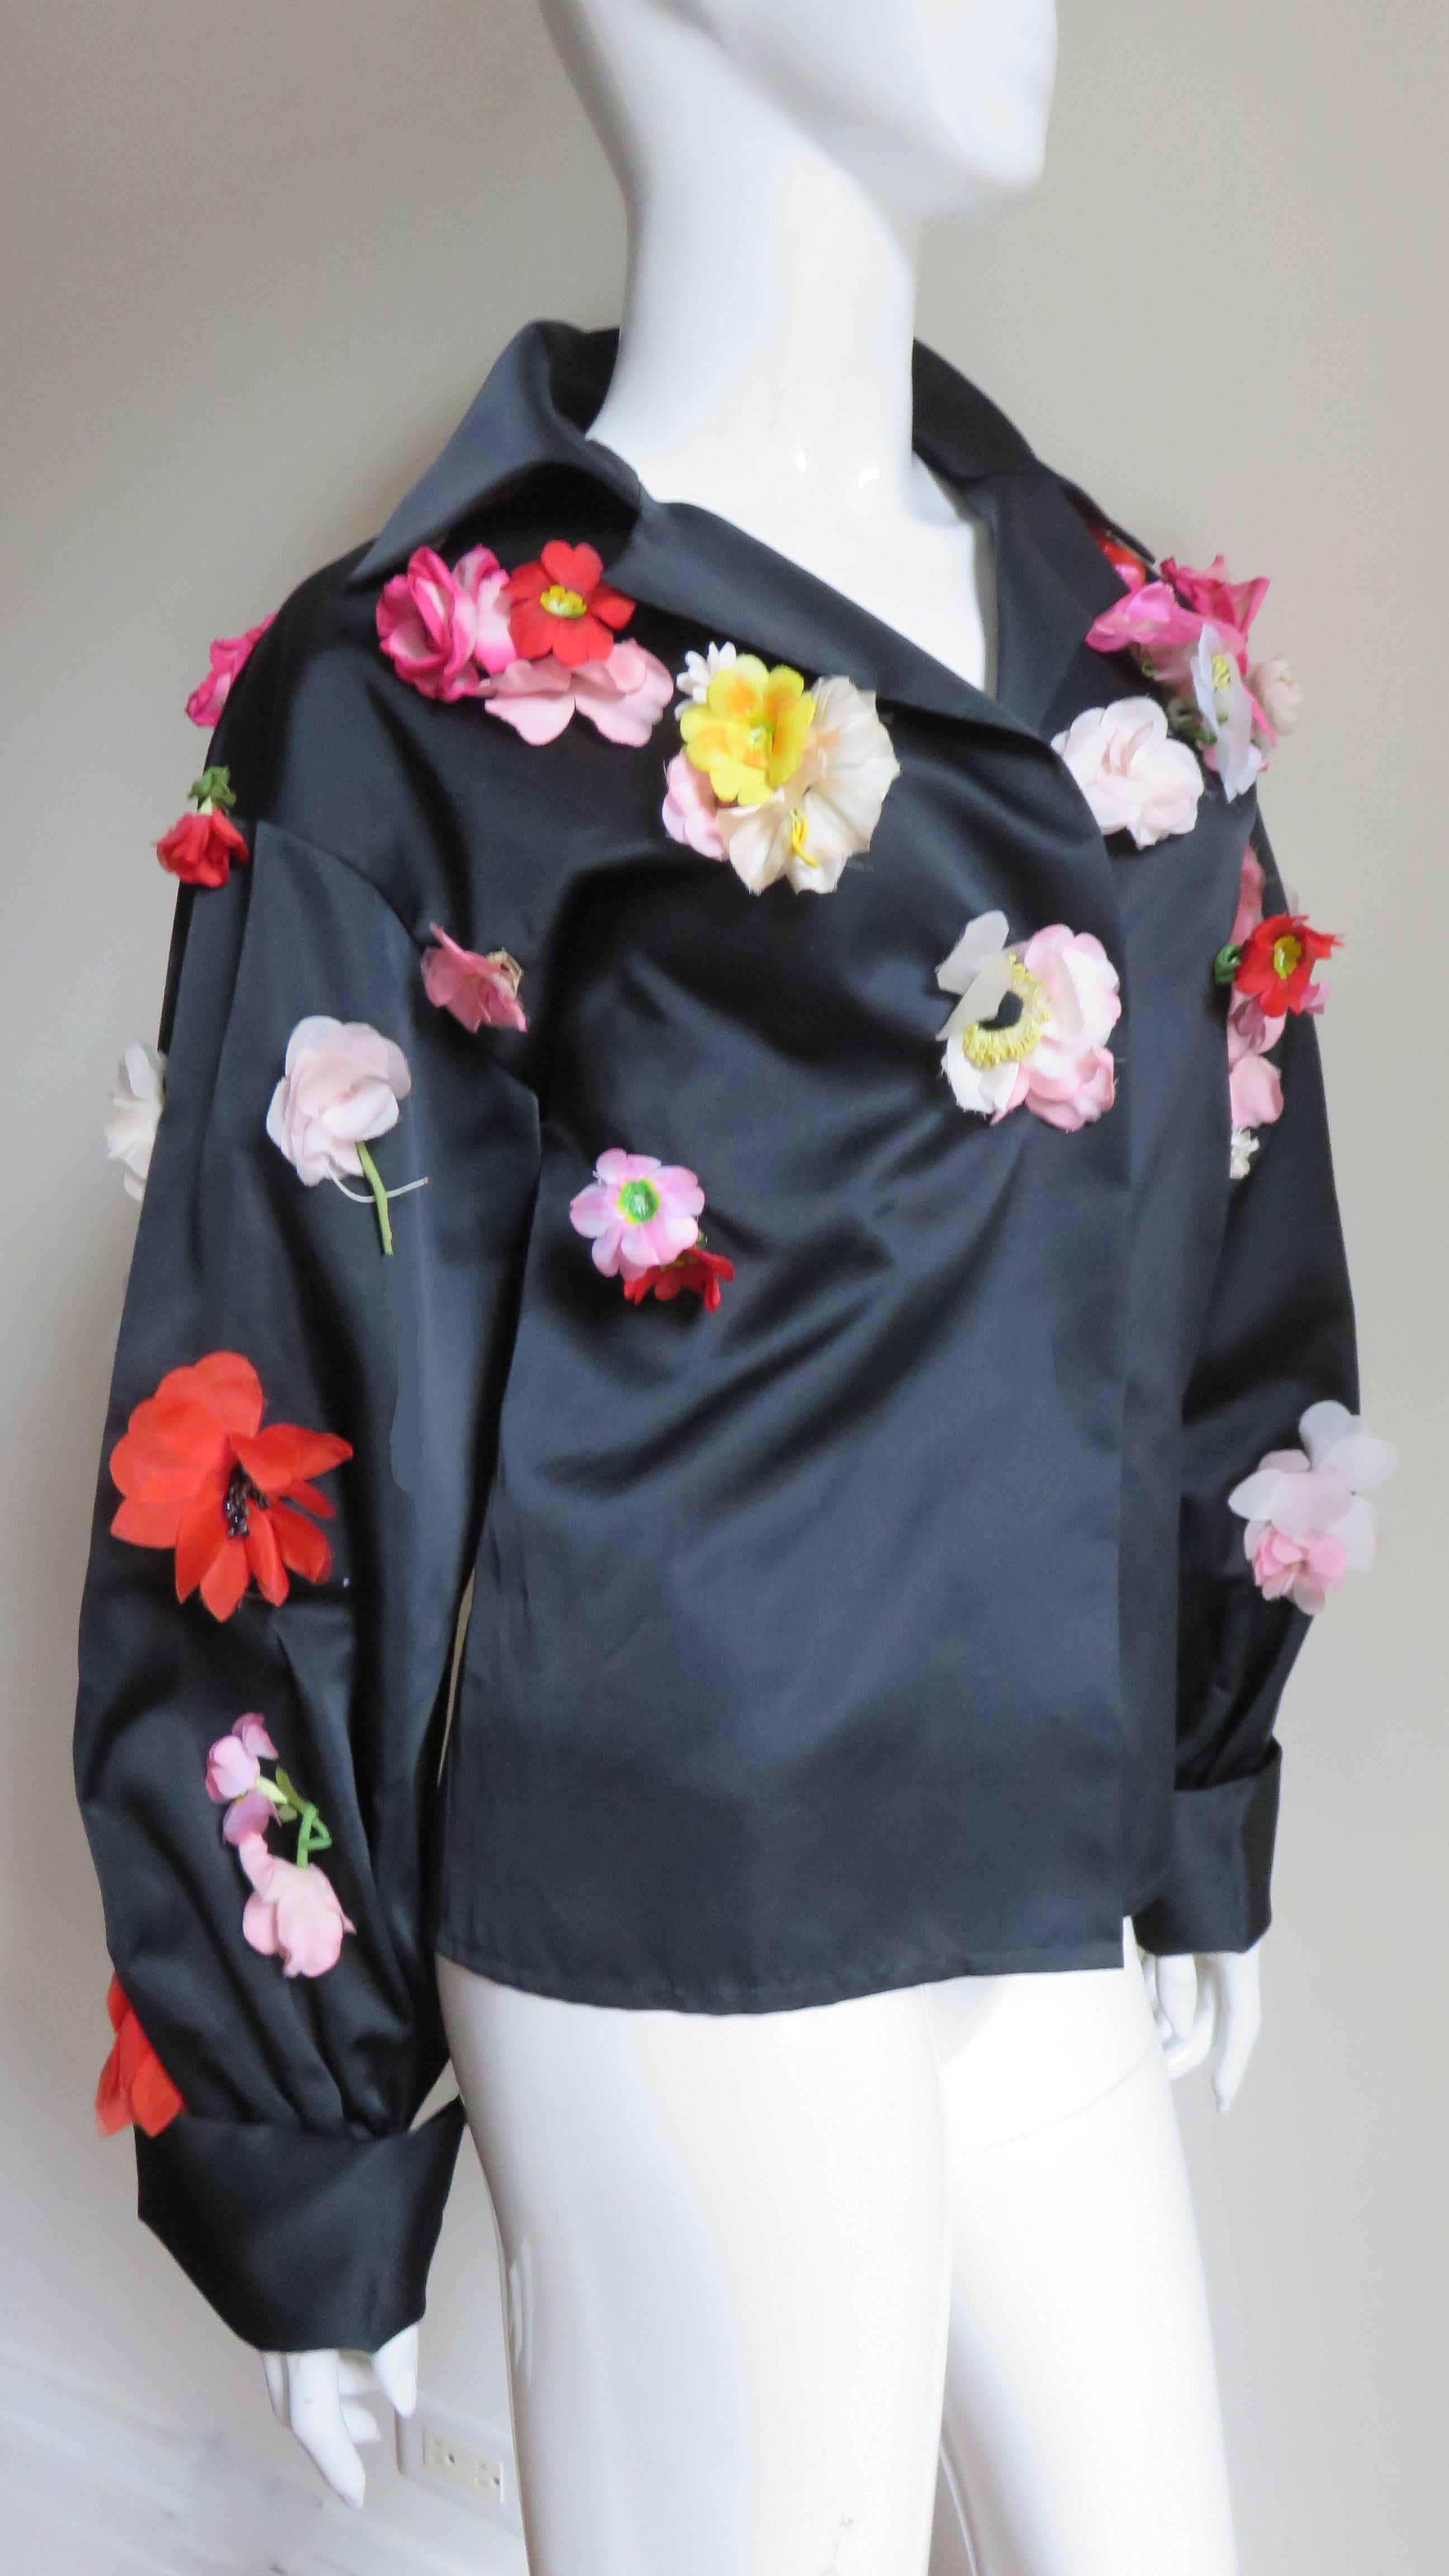  Bill Blass New 1970s Flower Applique Jacket 1